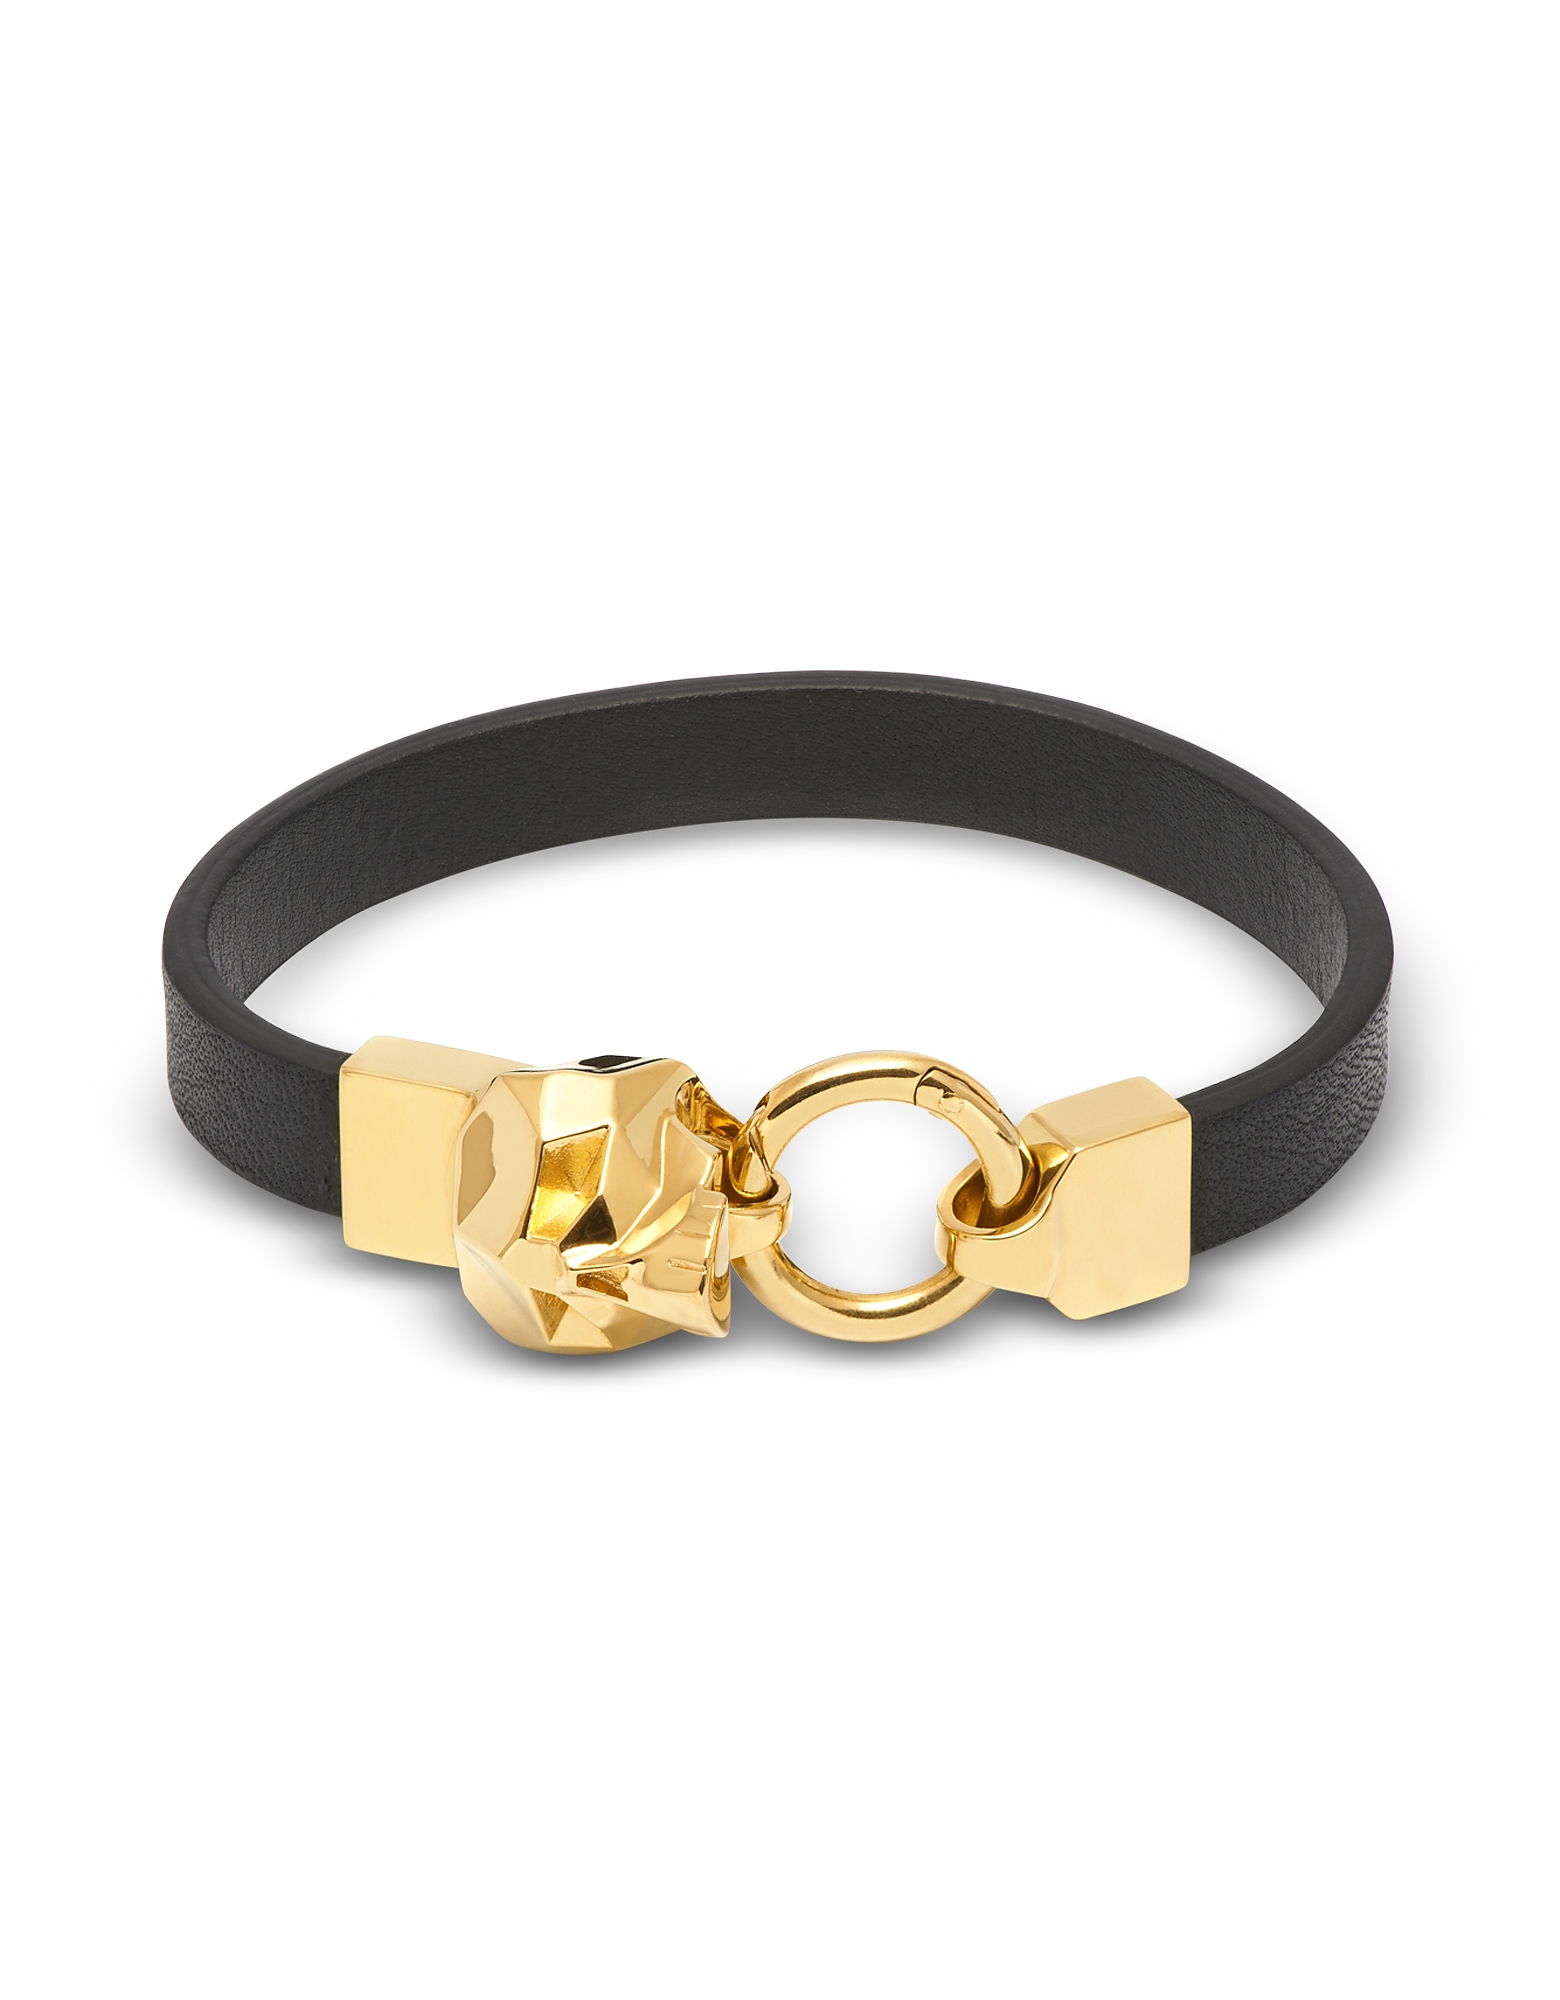 Northskull Men's Bracelets Hexagus Skull Yellow Gold lated Brass Leather Bracelet